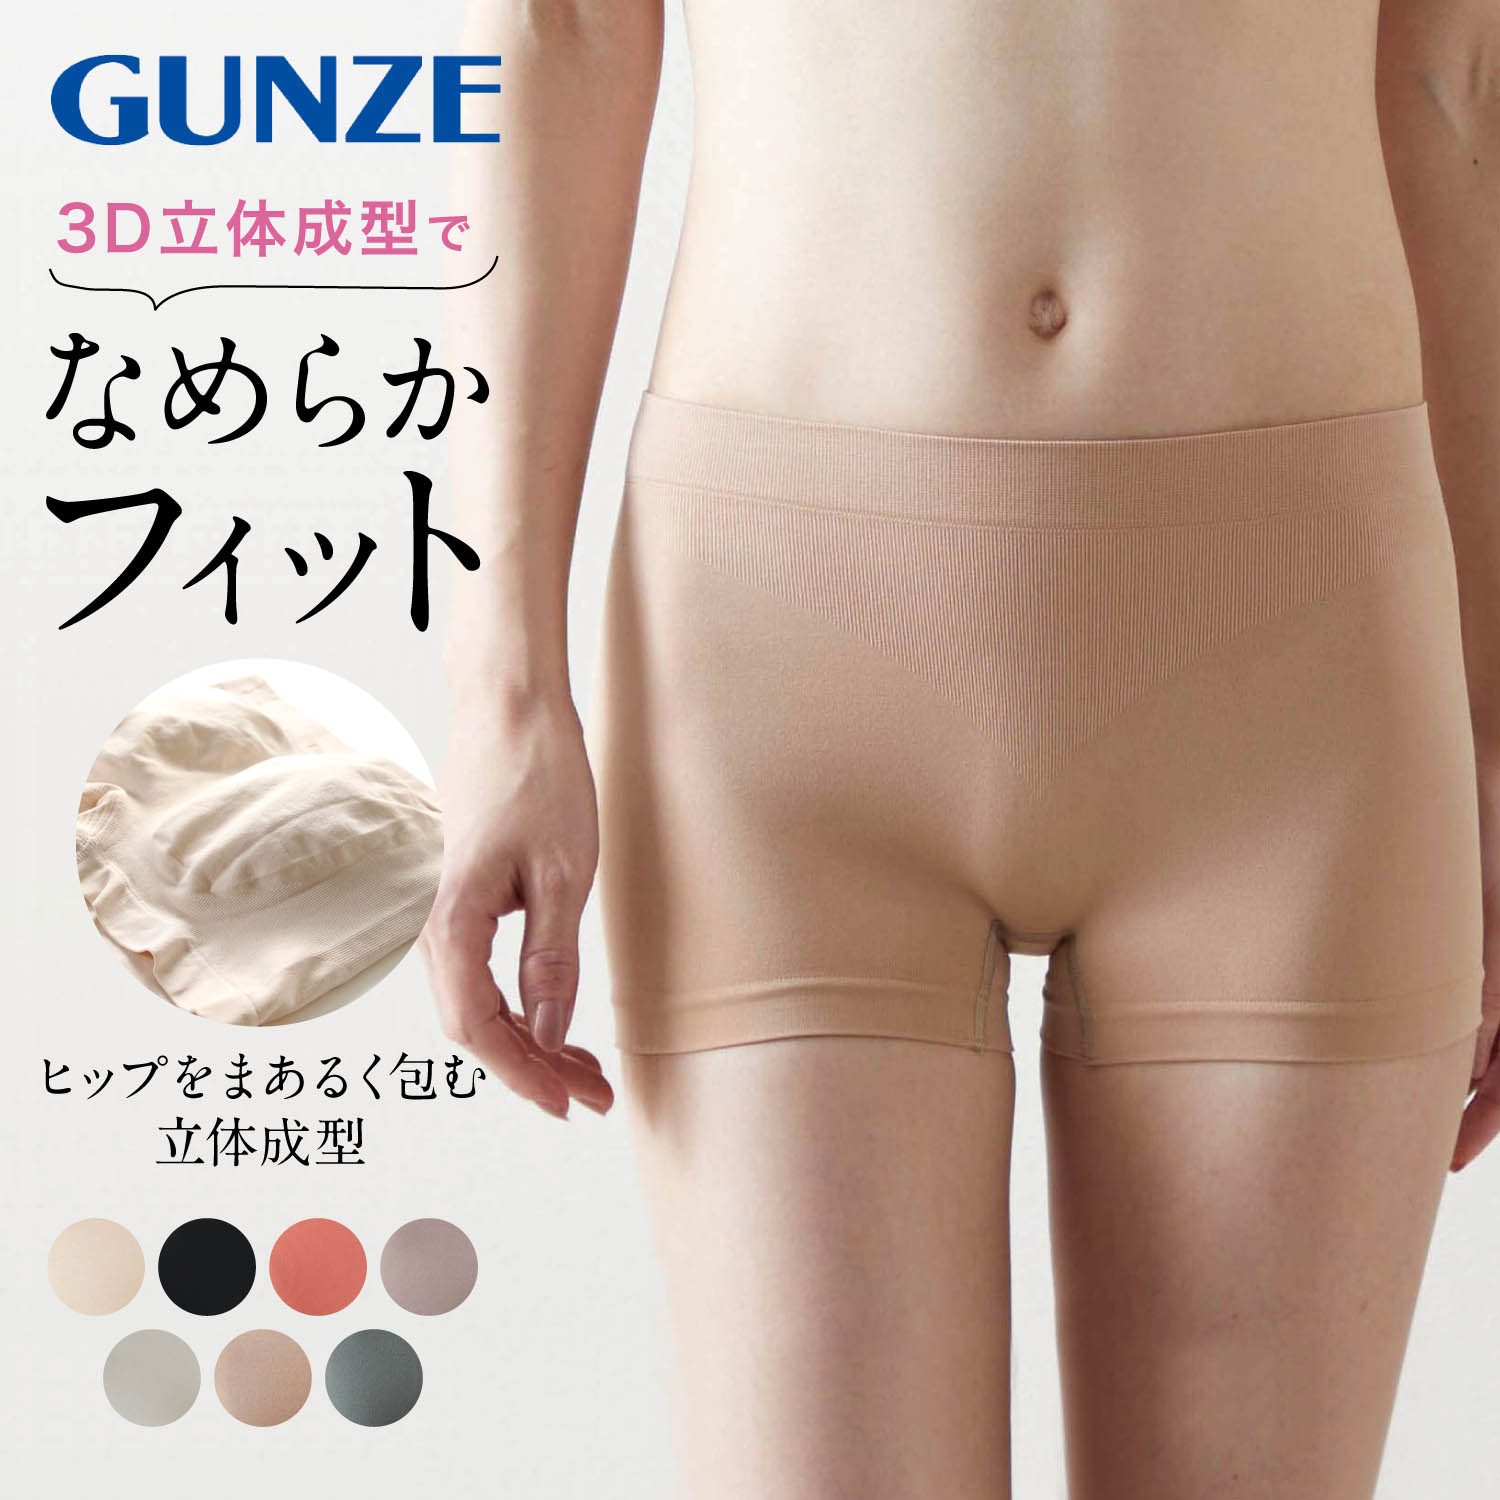 【グンゼ/GUNZE】Tuche 3D立体成型レギュラーショーツ(一分丈) 【まあるく包む】